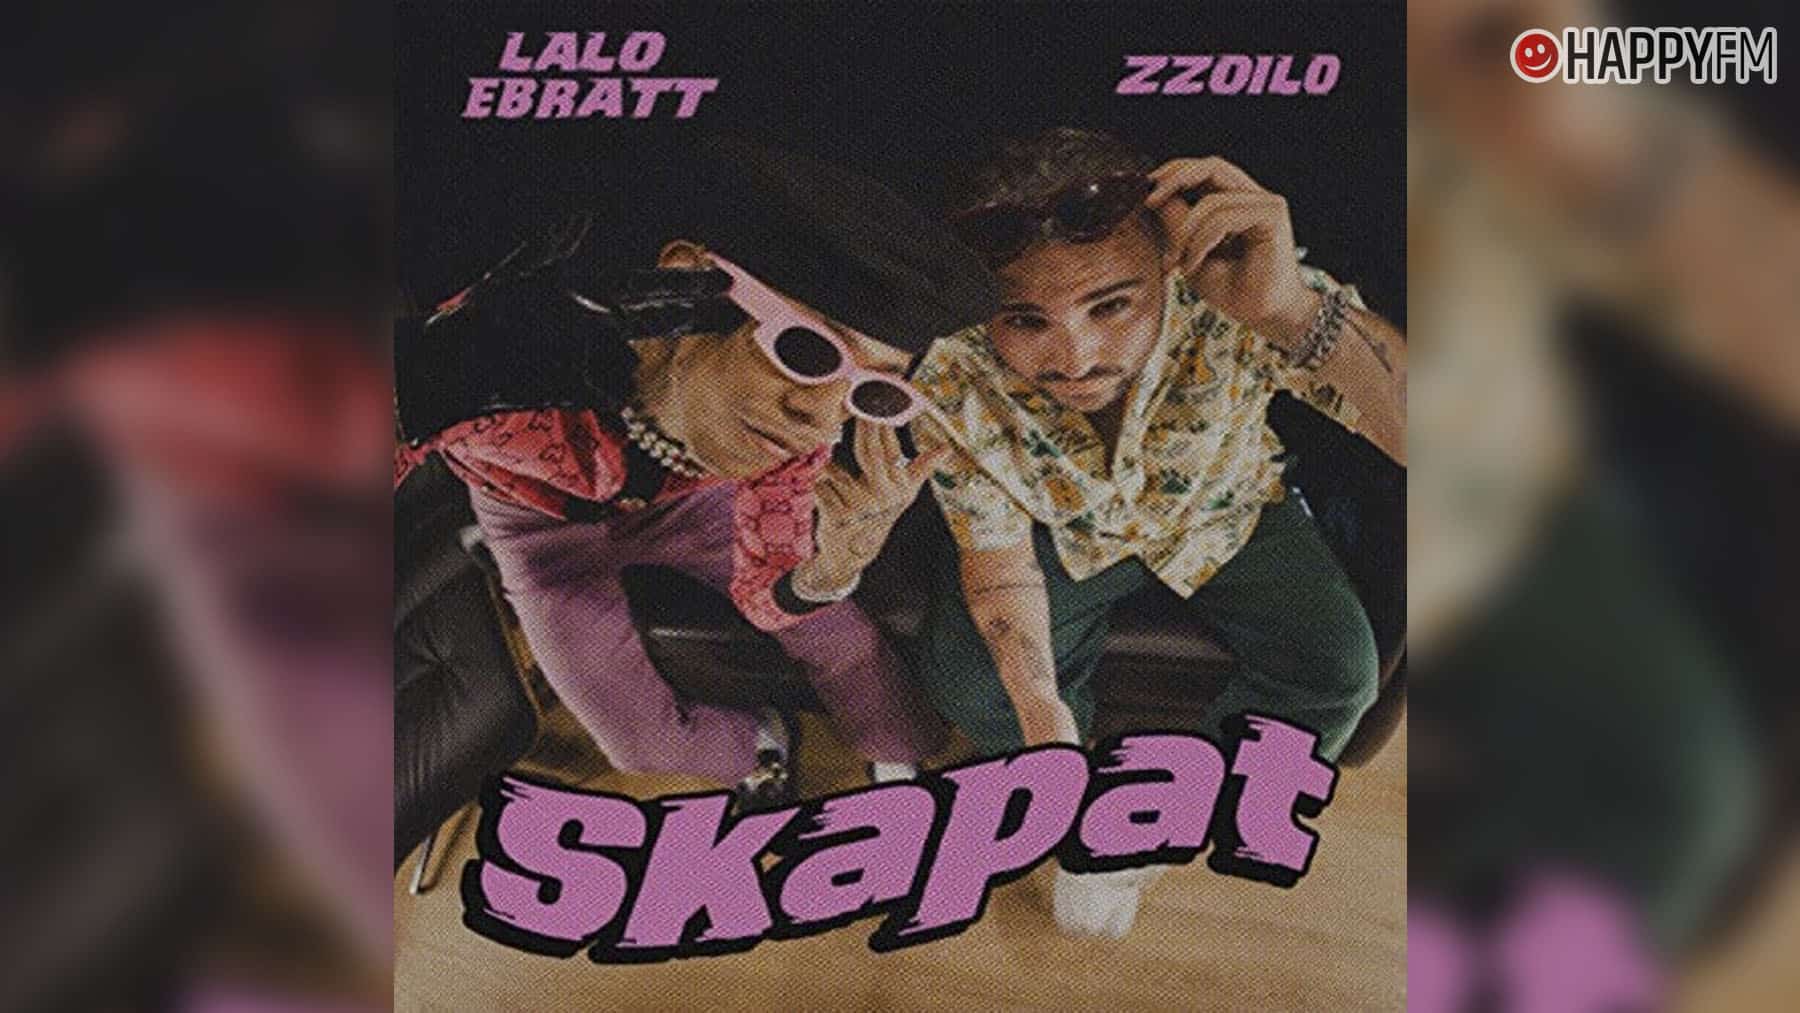 ‘Skapat’, de Lalo Ebratt y zzoilo: letra y vídeo